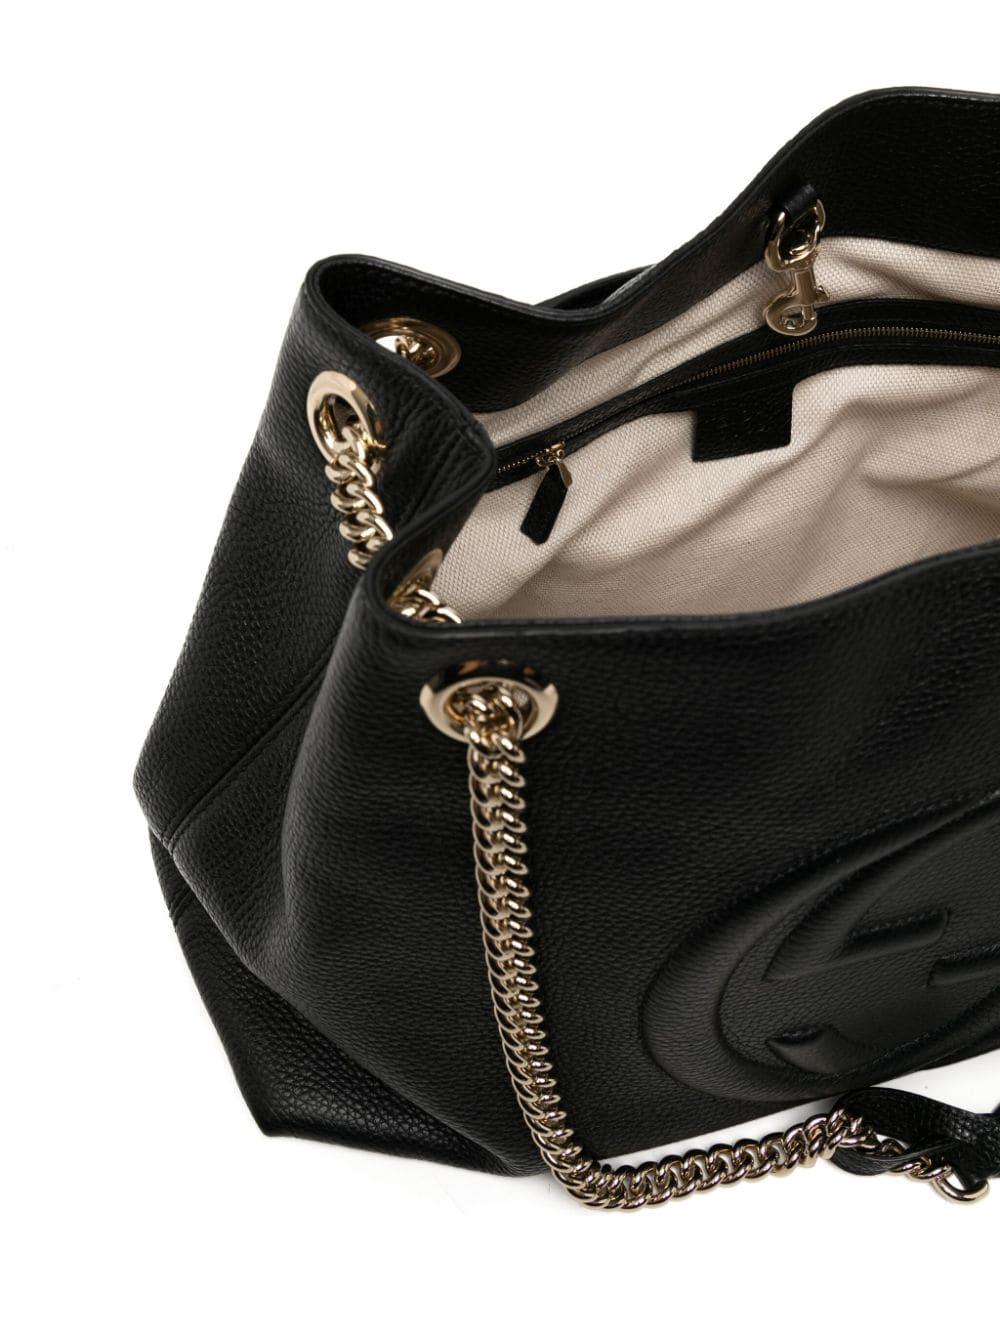 Women's or Men's Gucci Interlocking G Stitch Chain Tote Bag